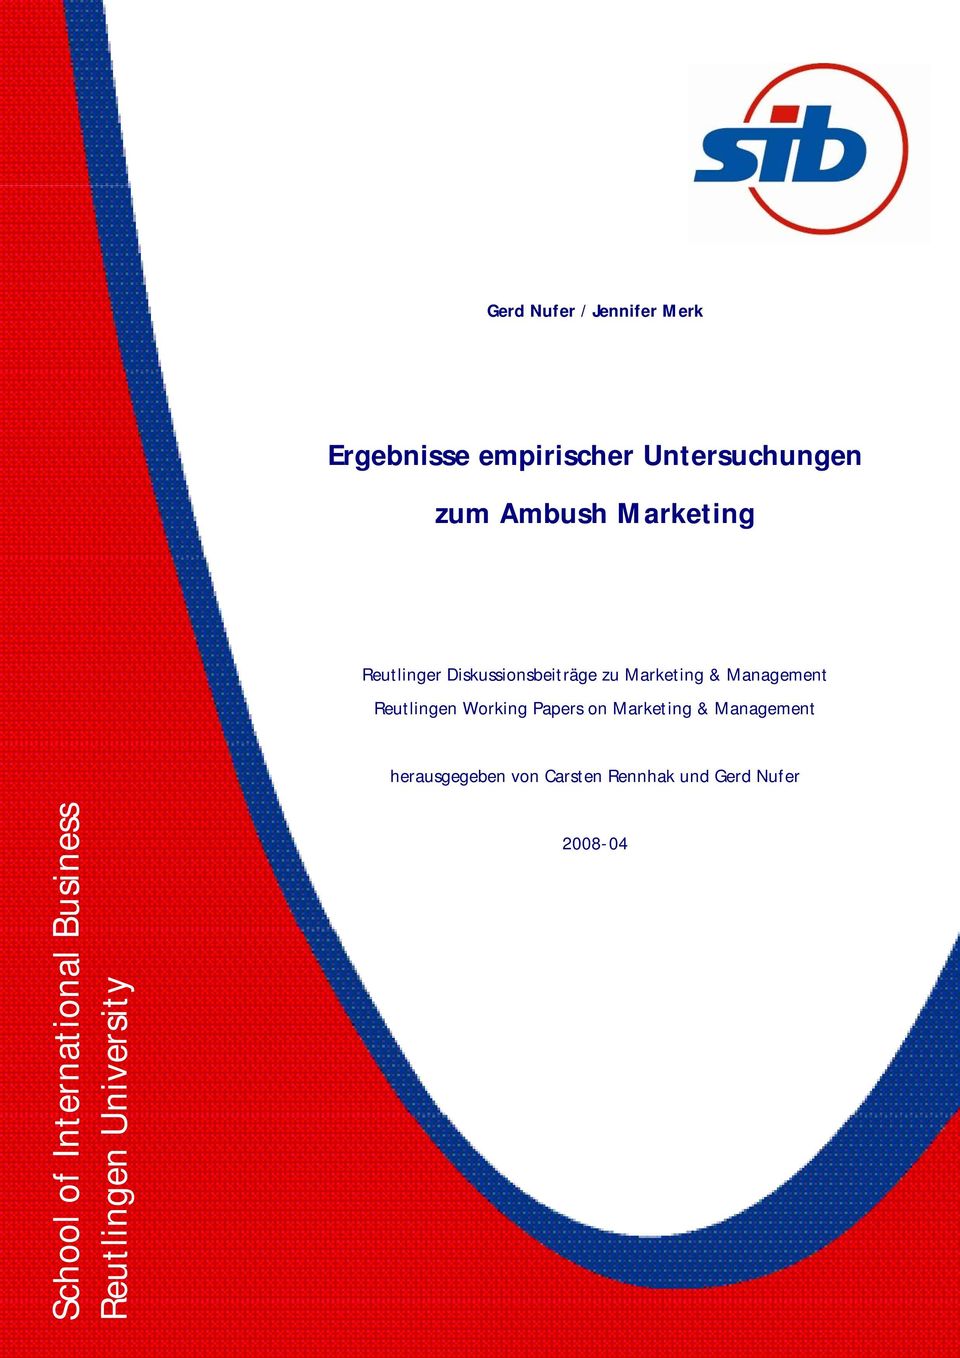 Reutlingen Working Papers on Marketing & Management herausgegeben von